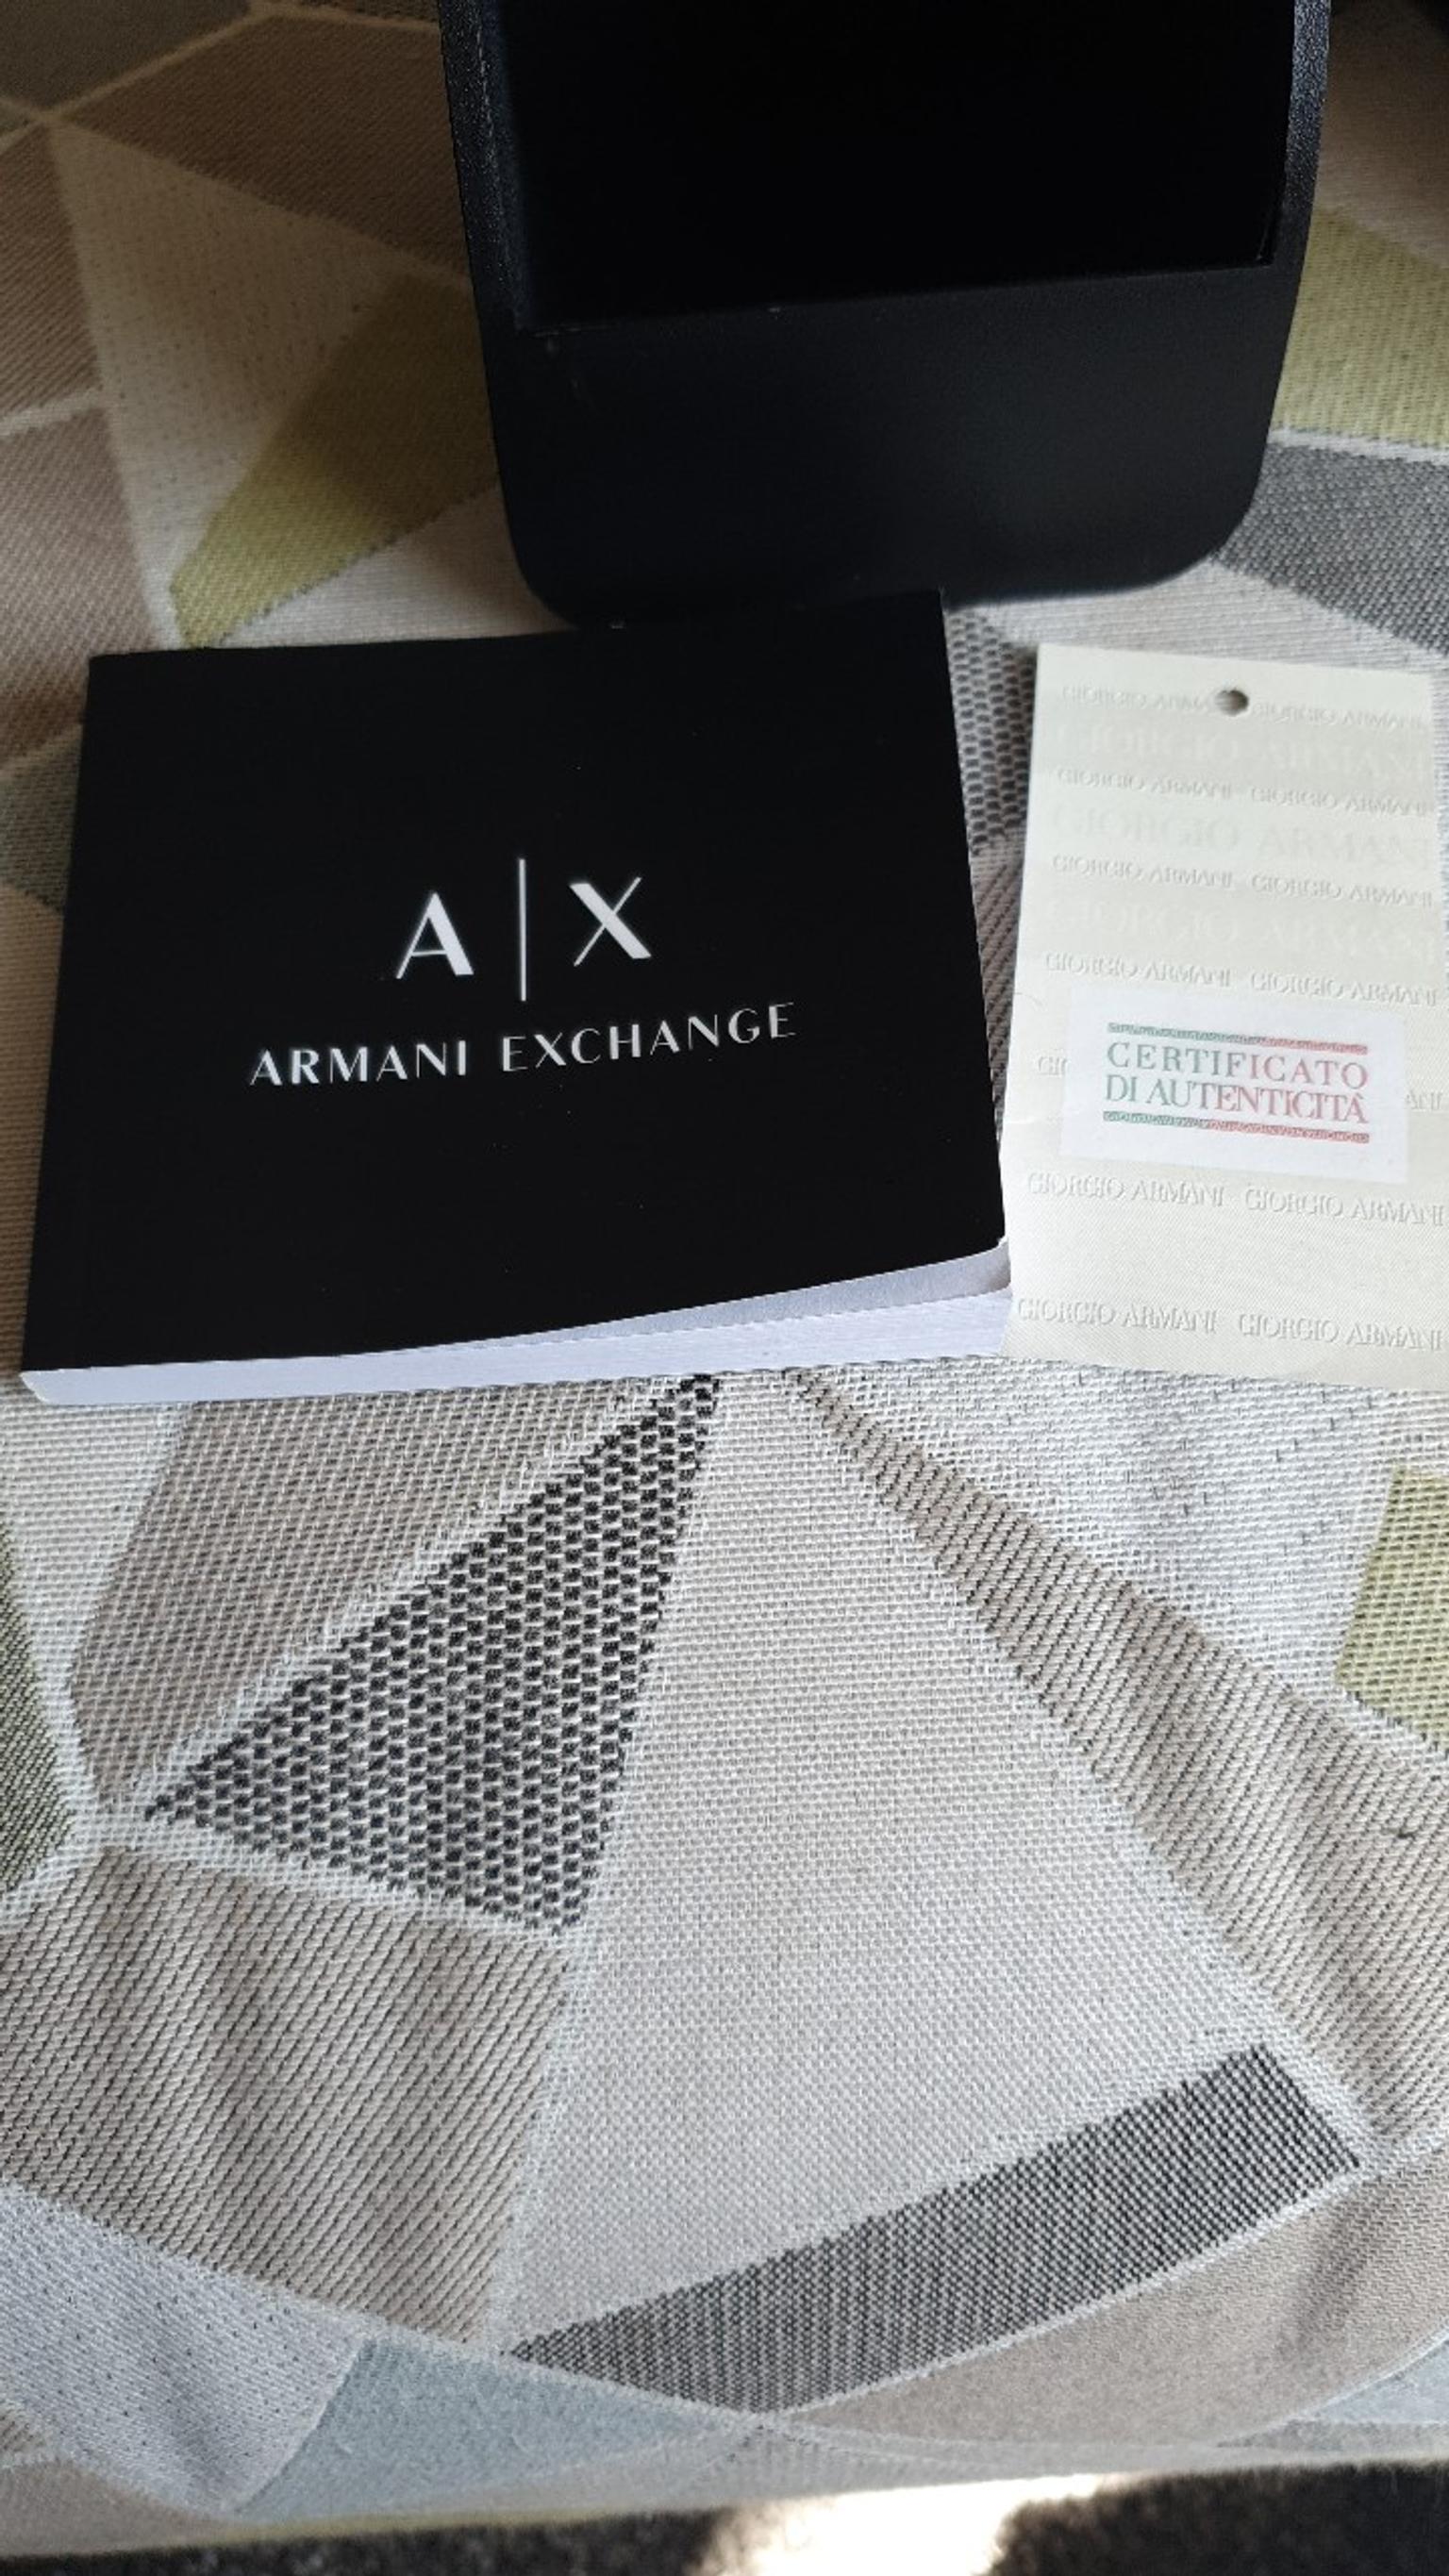 armani exchange authenticity